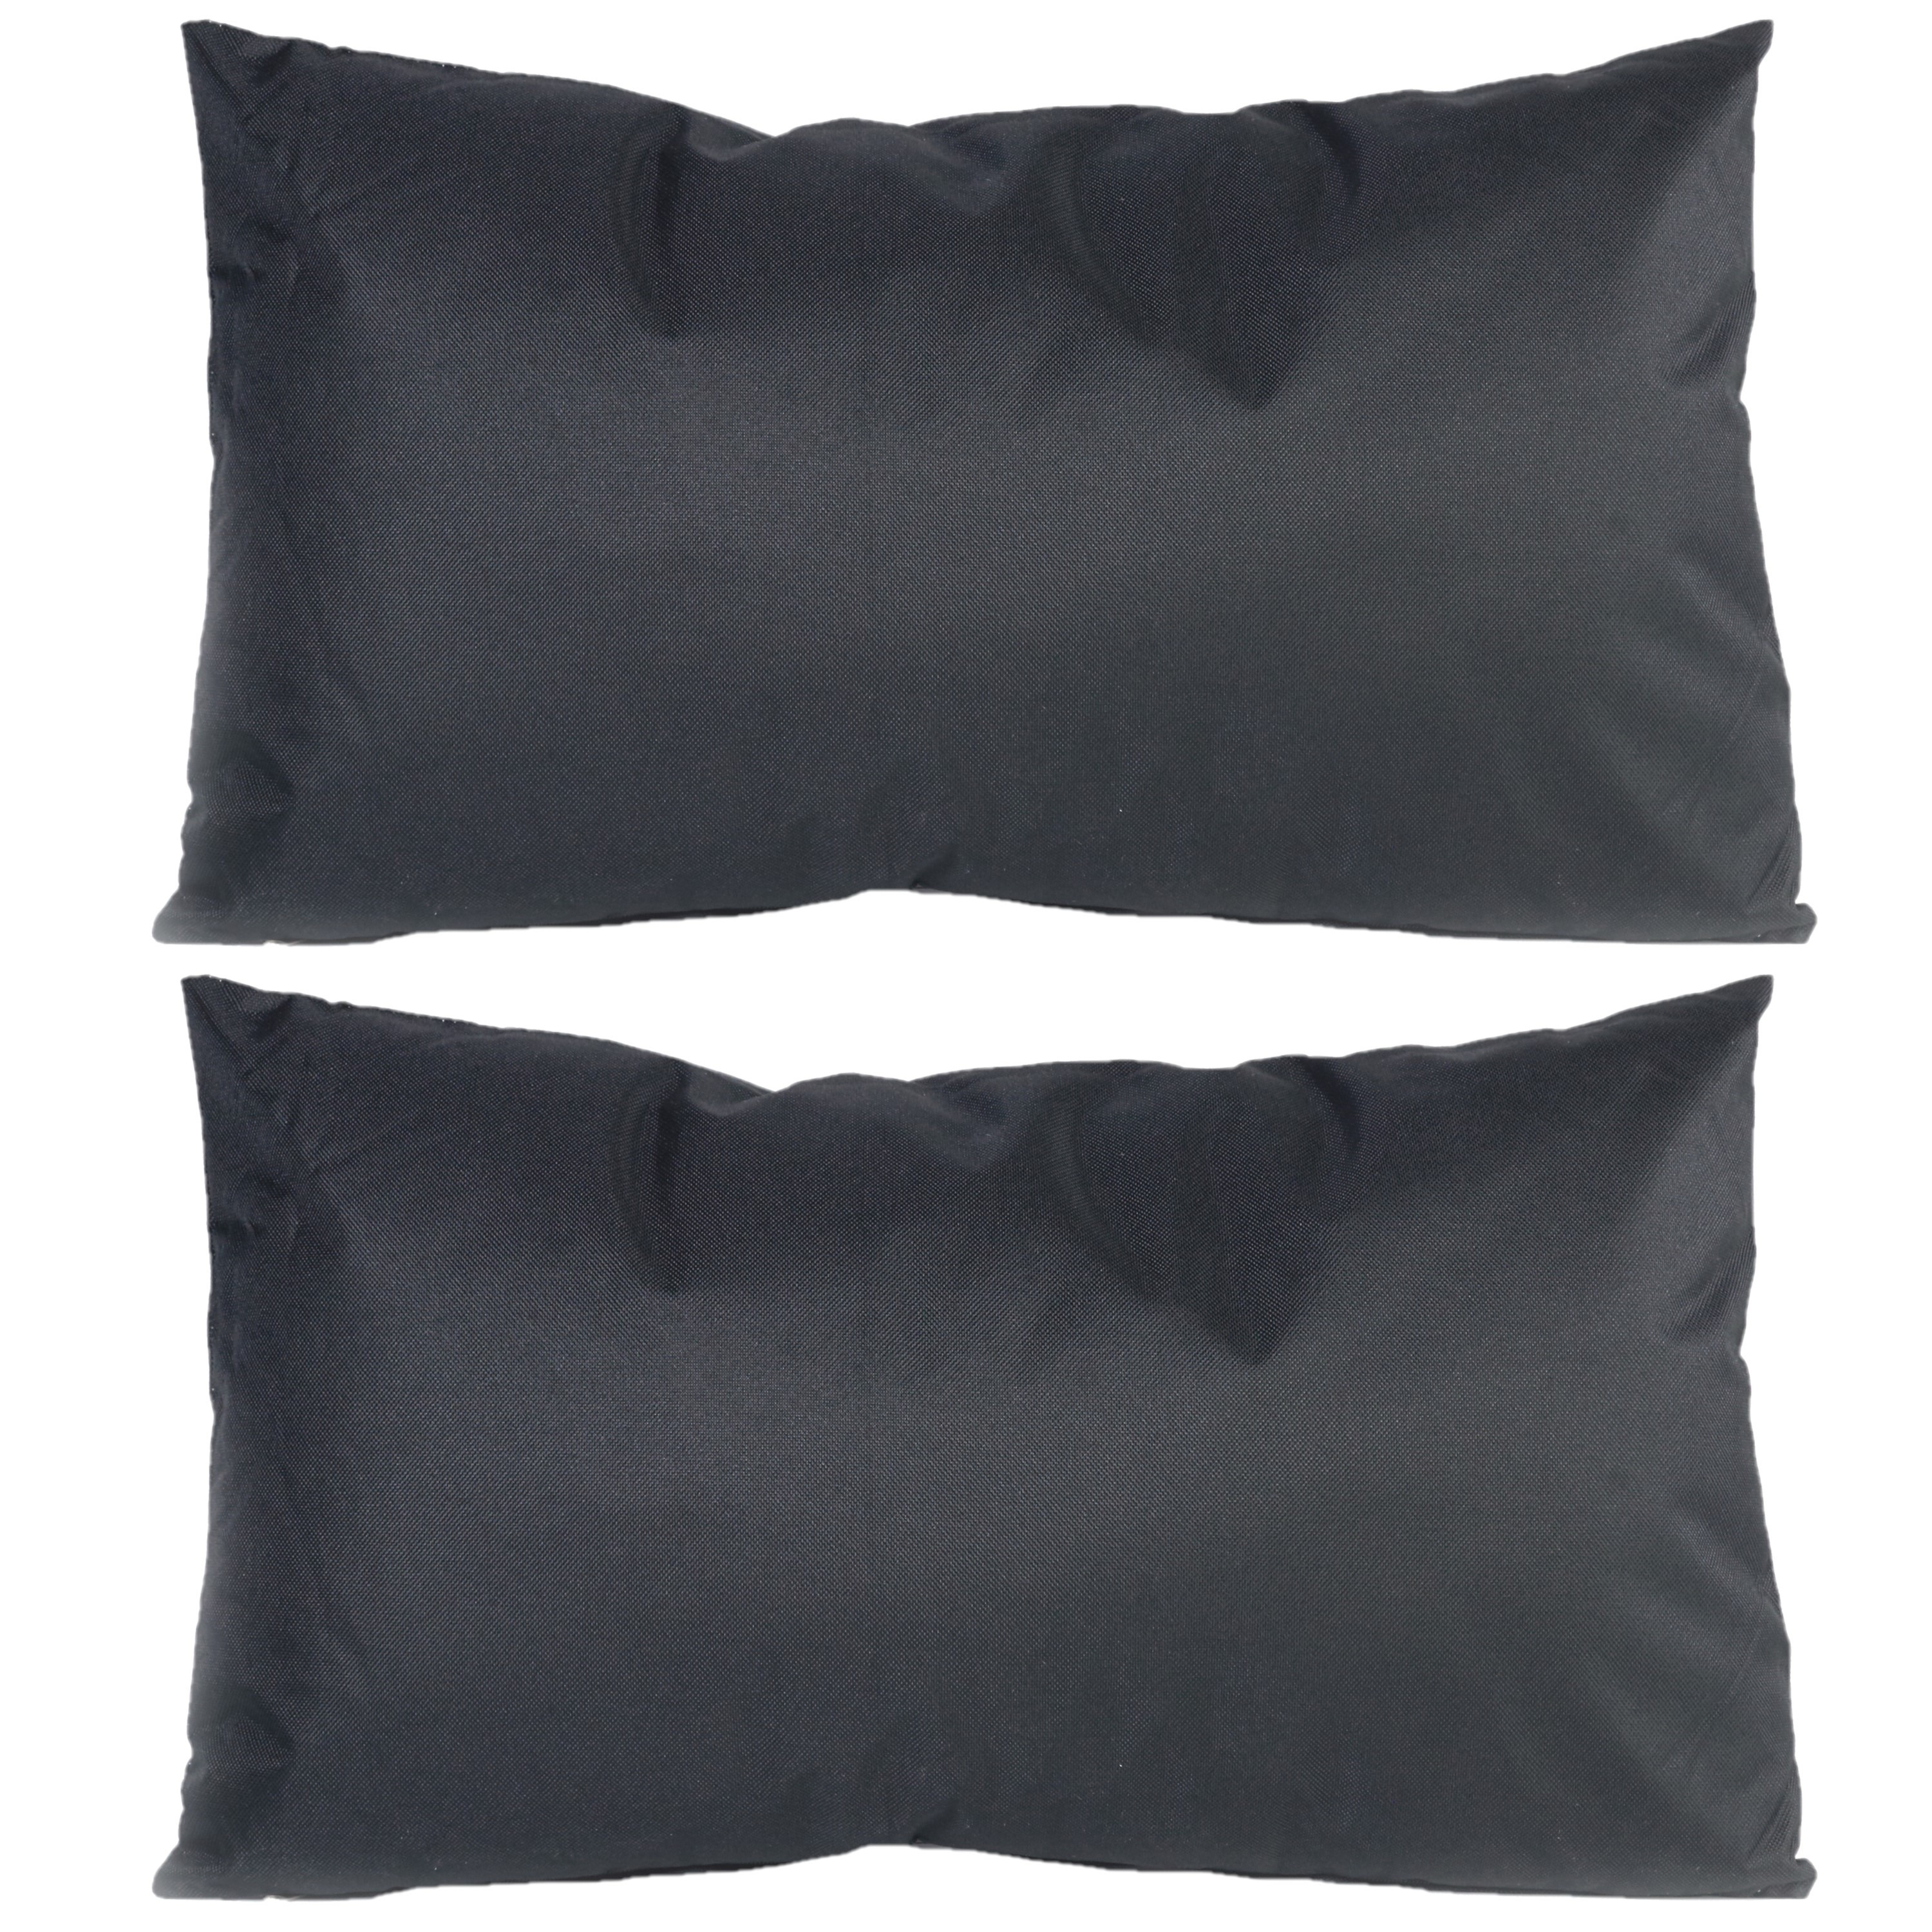 6x Bank-sier kussens voor binnen en buiten in de kleur zwart 30 x 50 cm